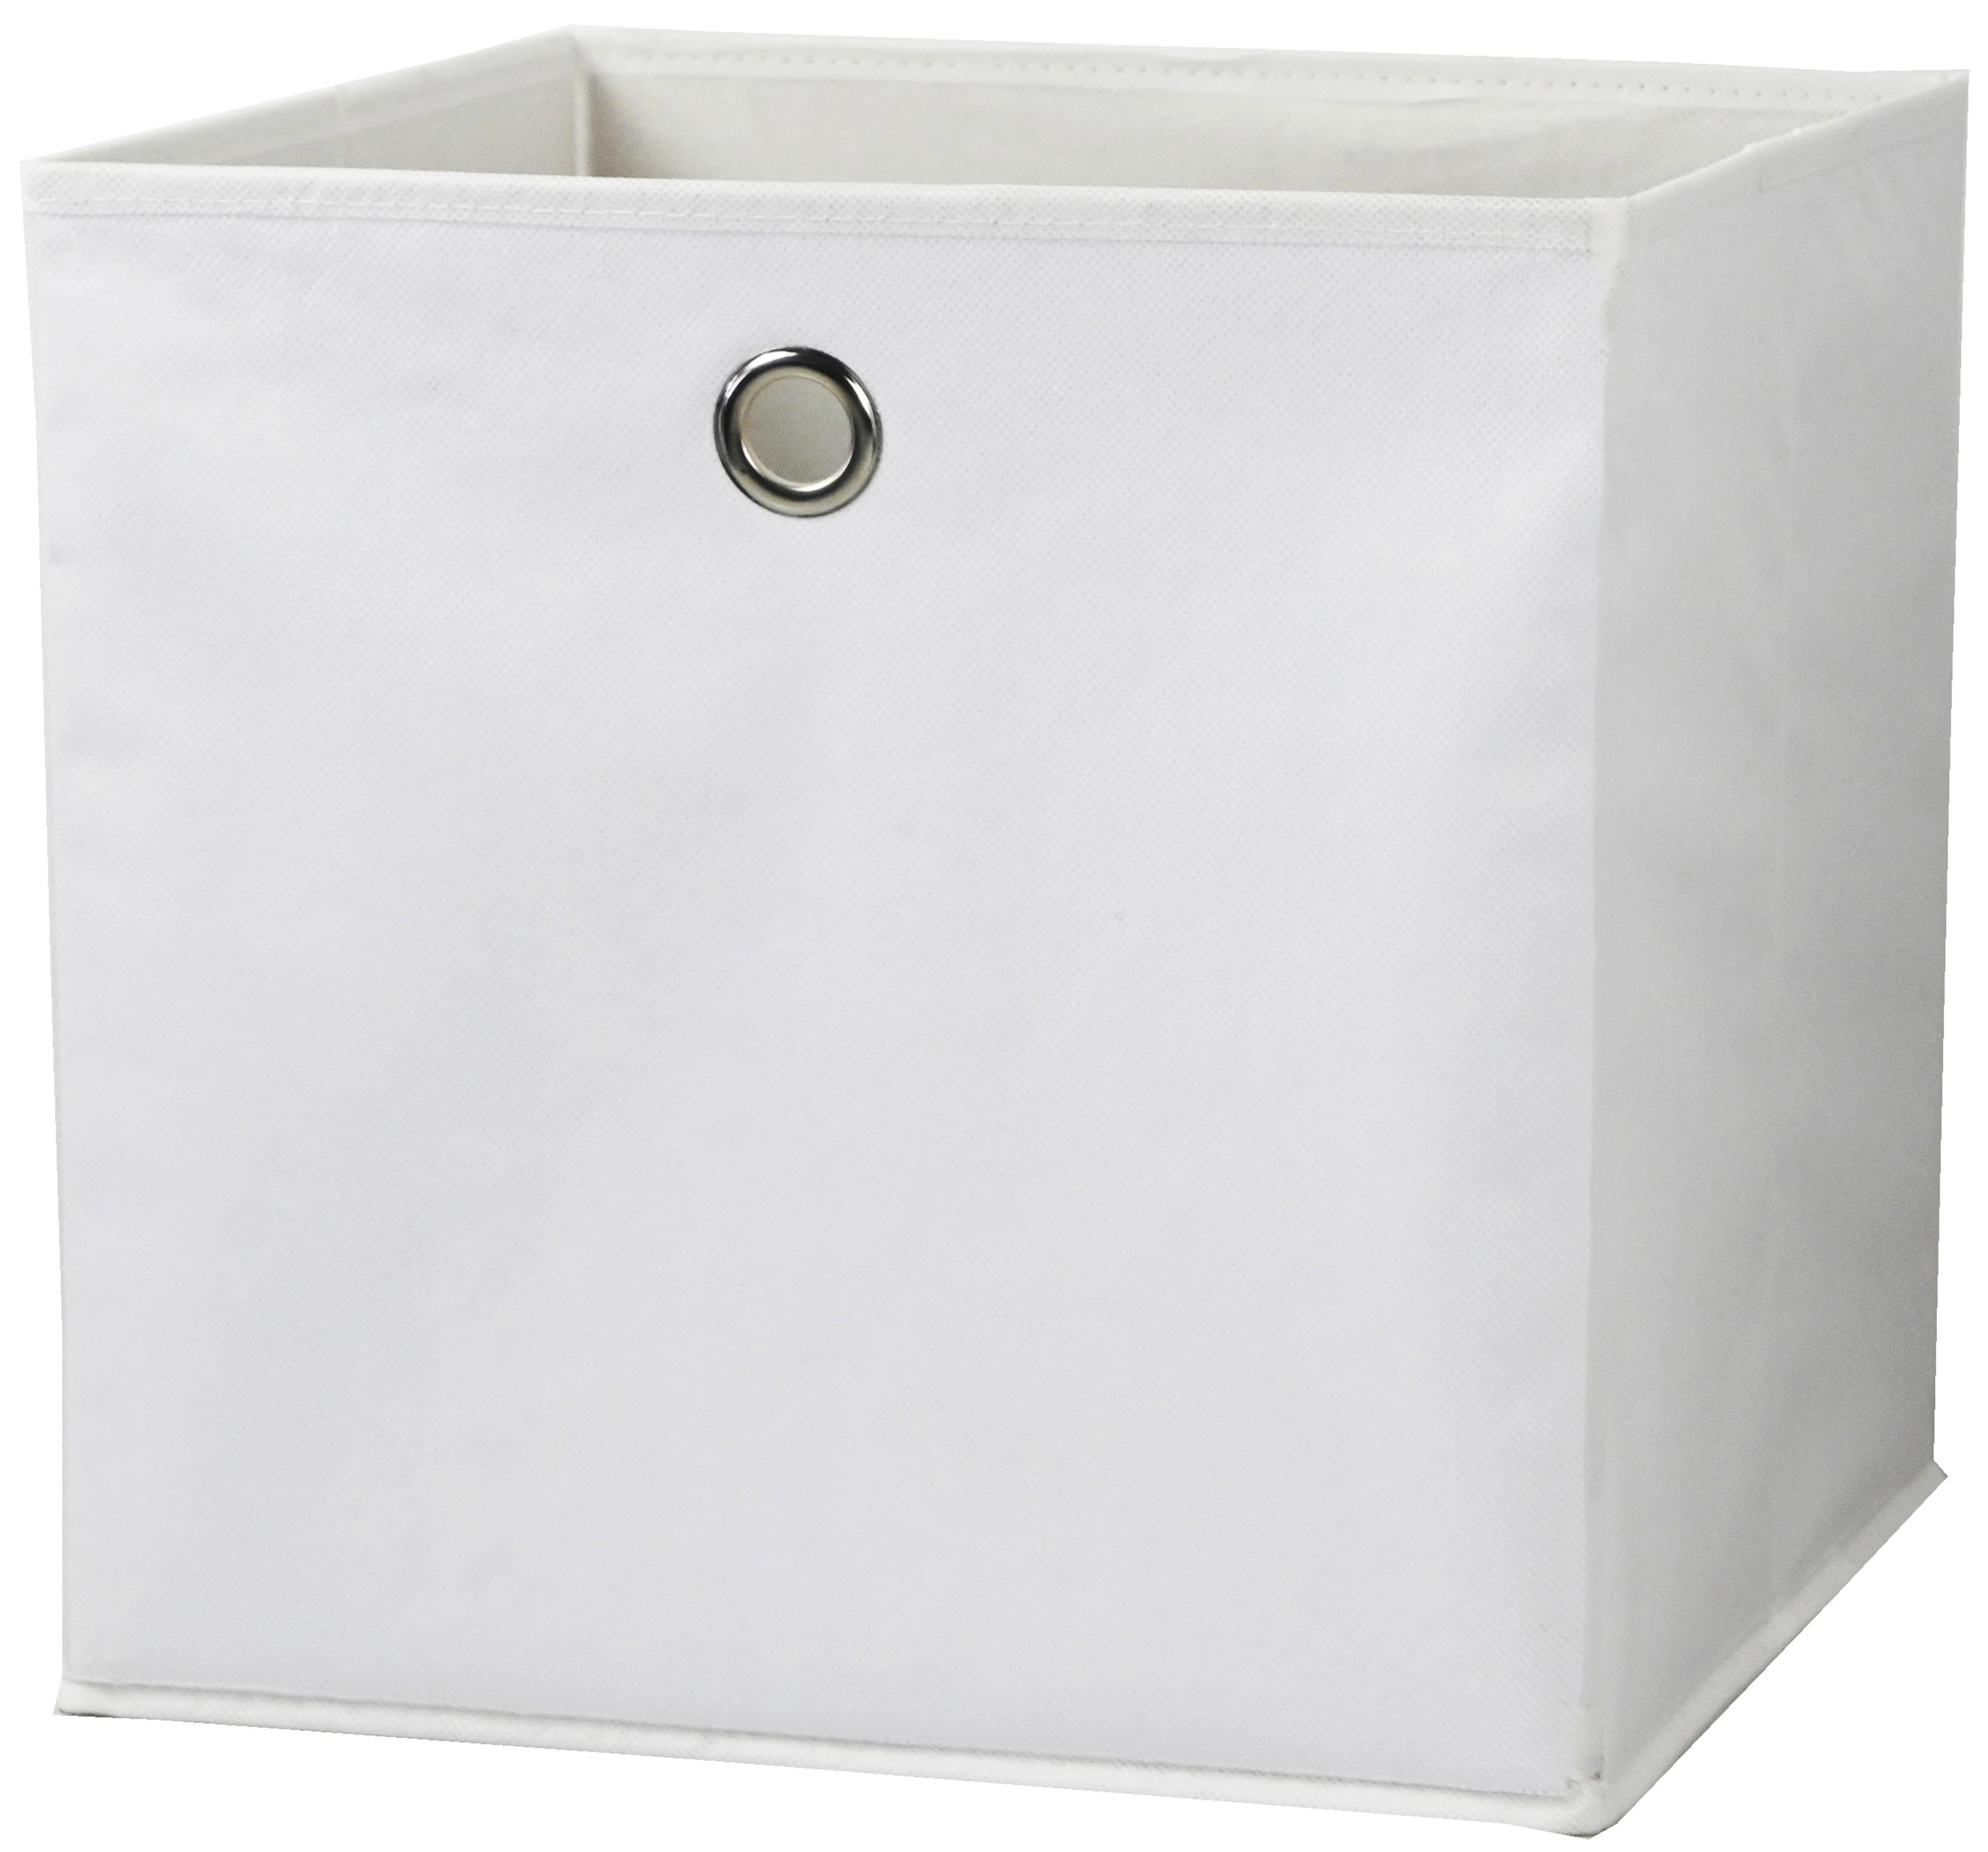 Faltbox Fibi in Weiß - Weiß, KONVENTIONELL, Karton/Textil (30/30/30cm) - Modern Living